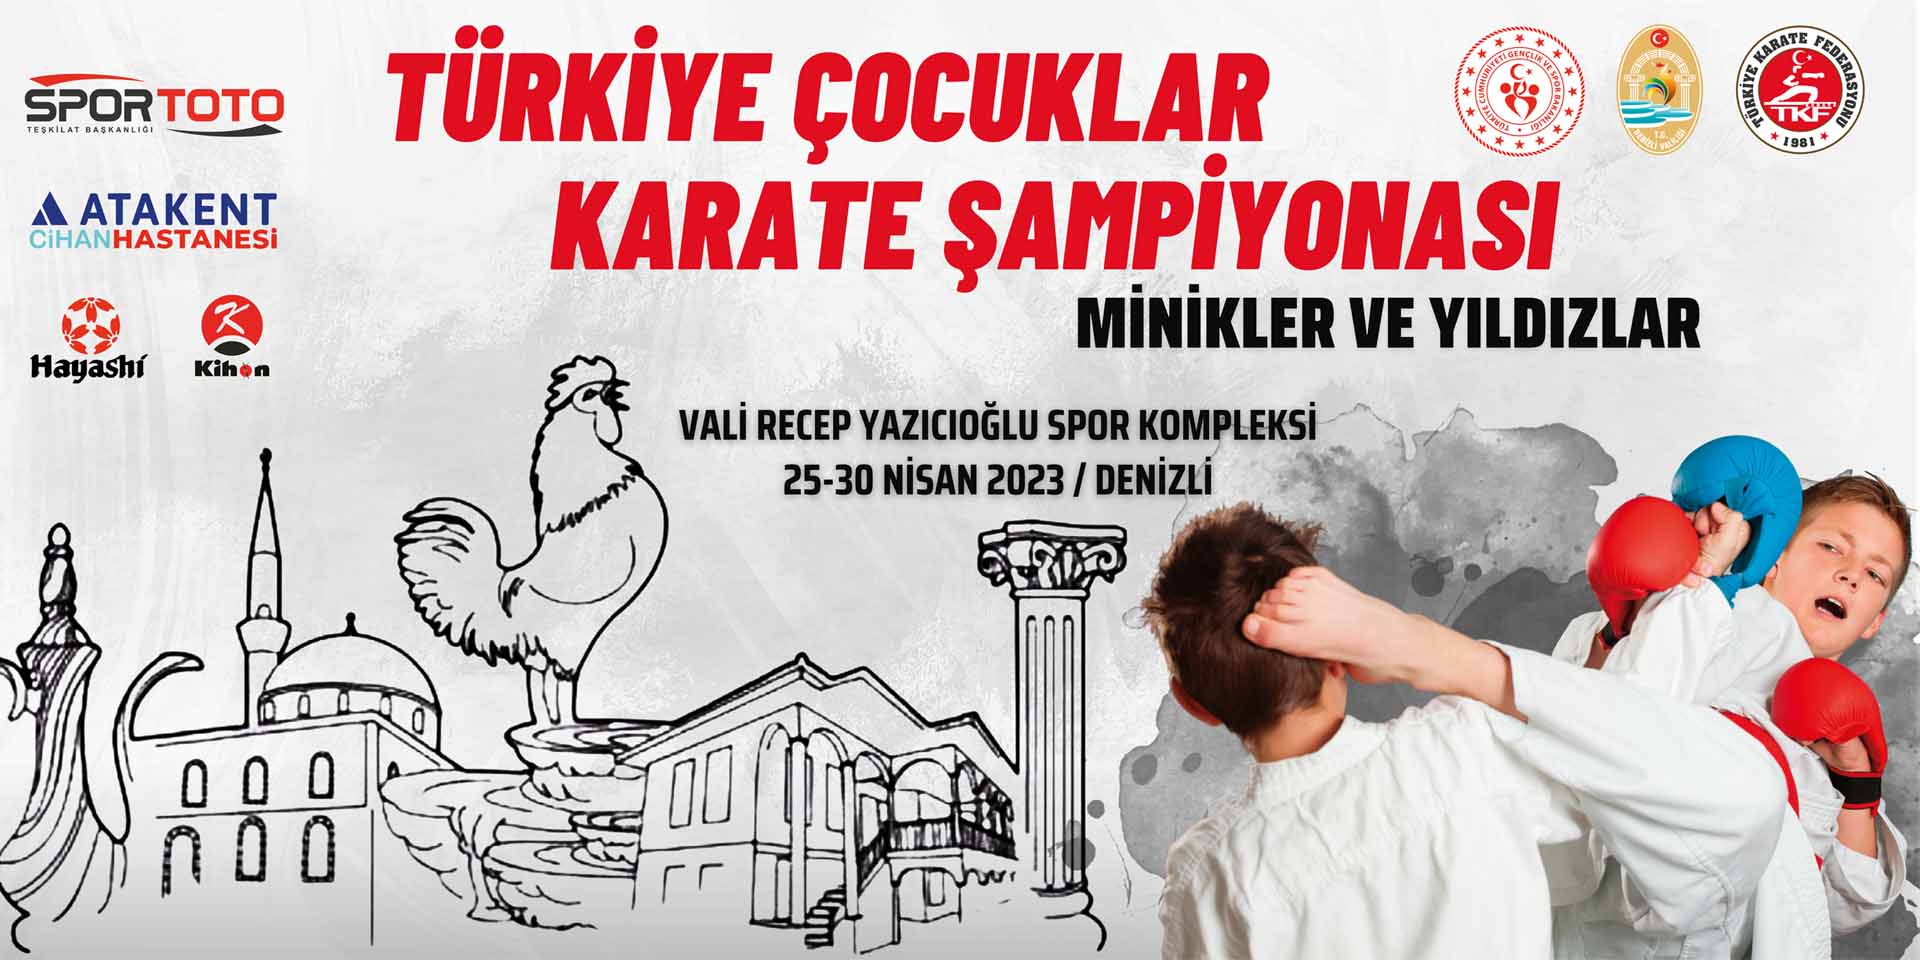 Türkiye Minikler ve Yıldızlar Karate Şampiyonası 25-30 Nisan tarihlerinde Denizli’nin ev sahipliğinde yapılacak. Dev organizasyona 81 ilden 5 bin sporcu, antrenör ve yakınları katılım sağlayacak.